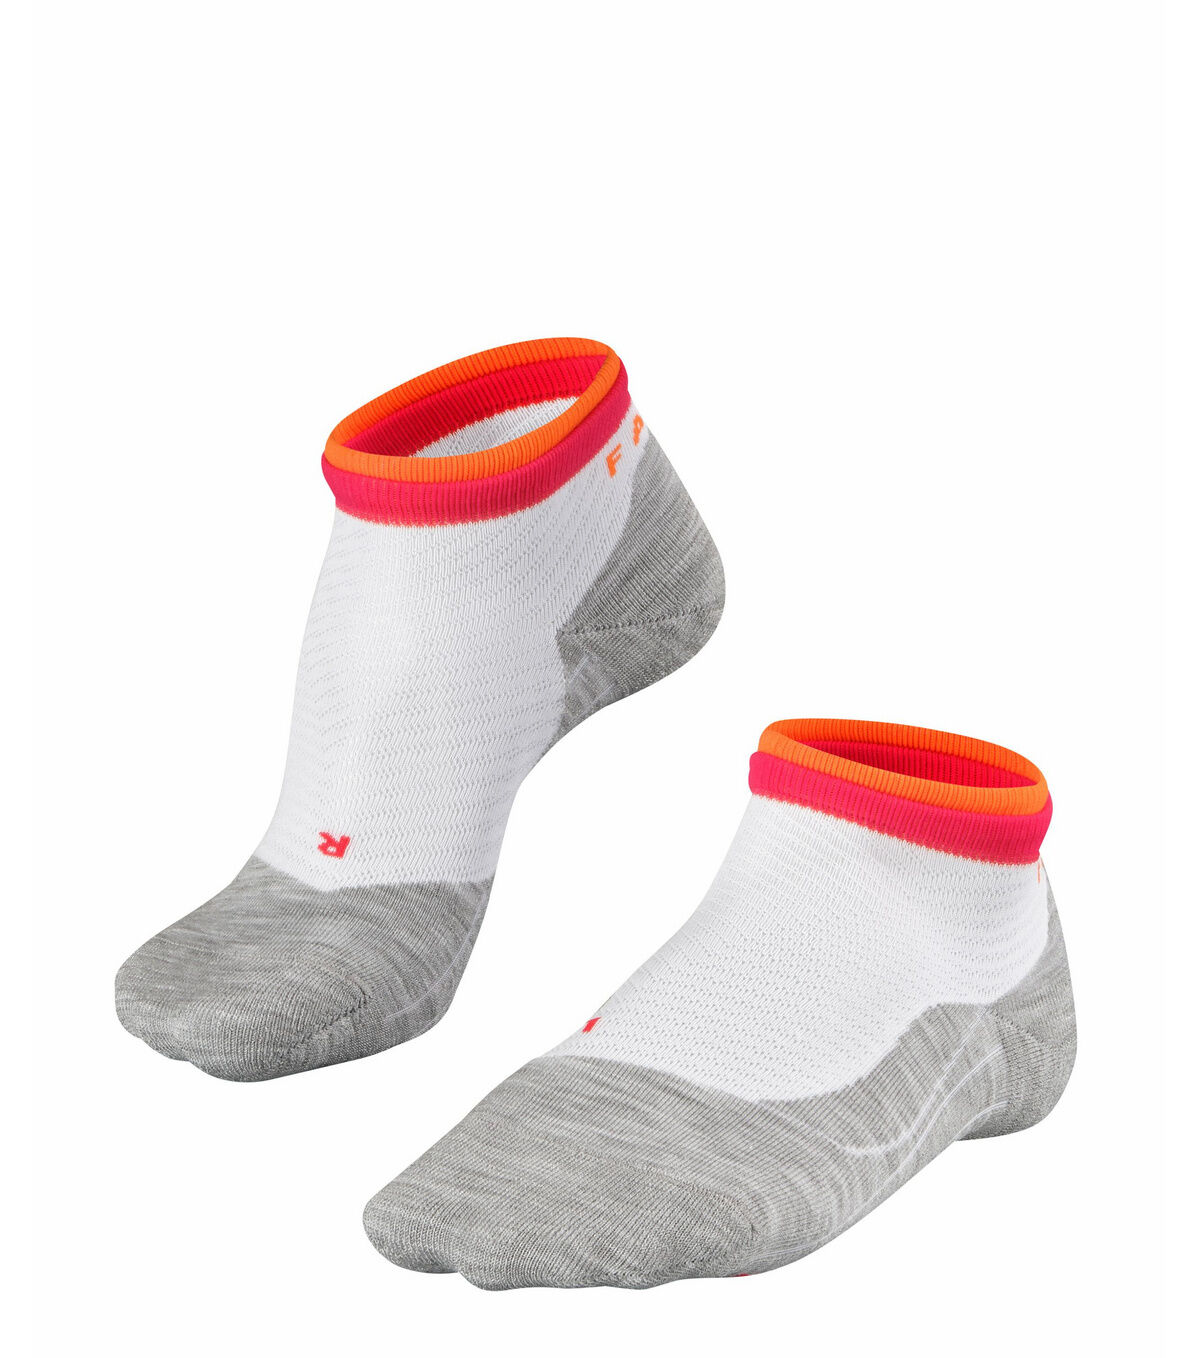 Falke RU4 Short Bulges - Running socks - Women's